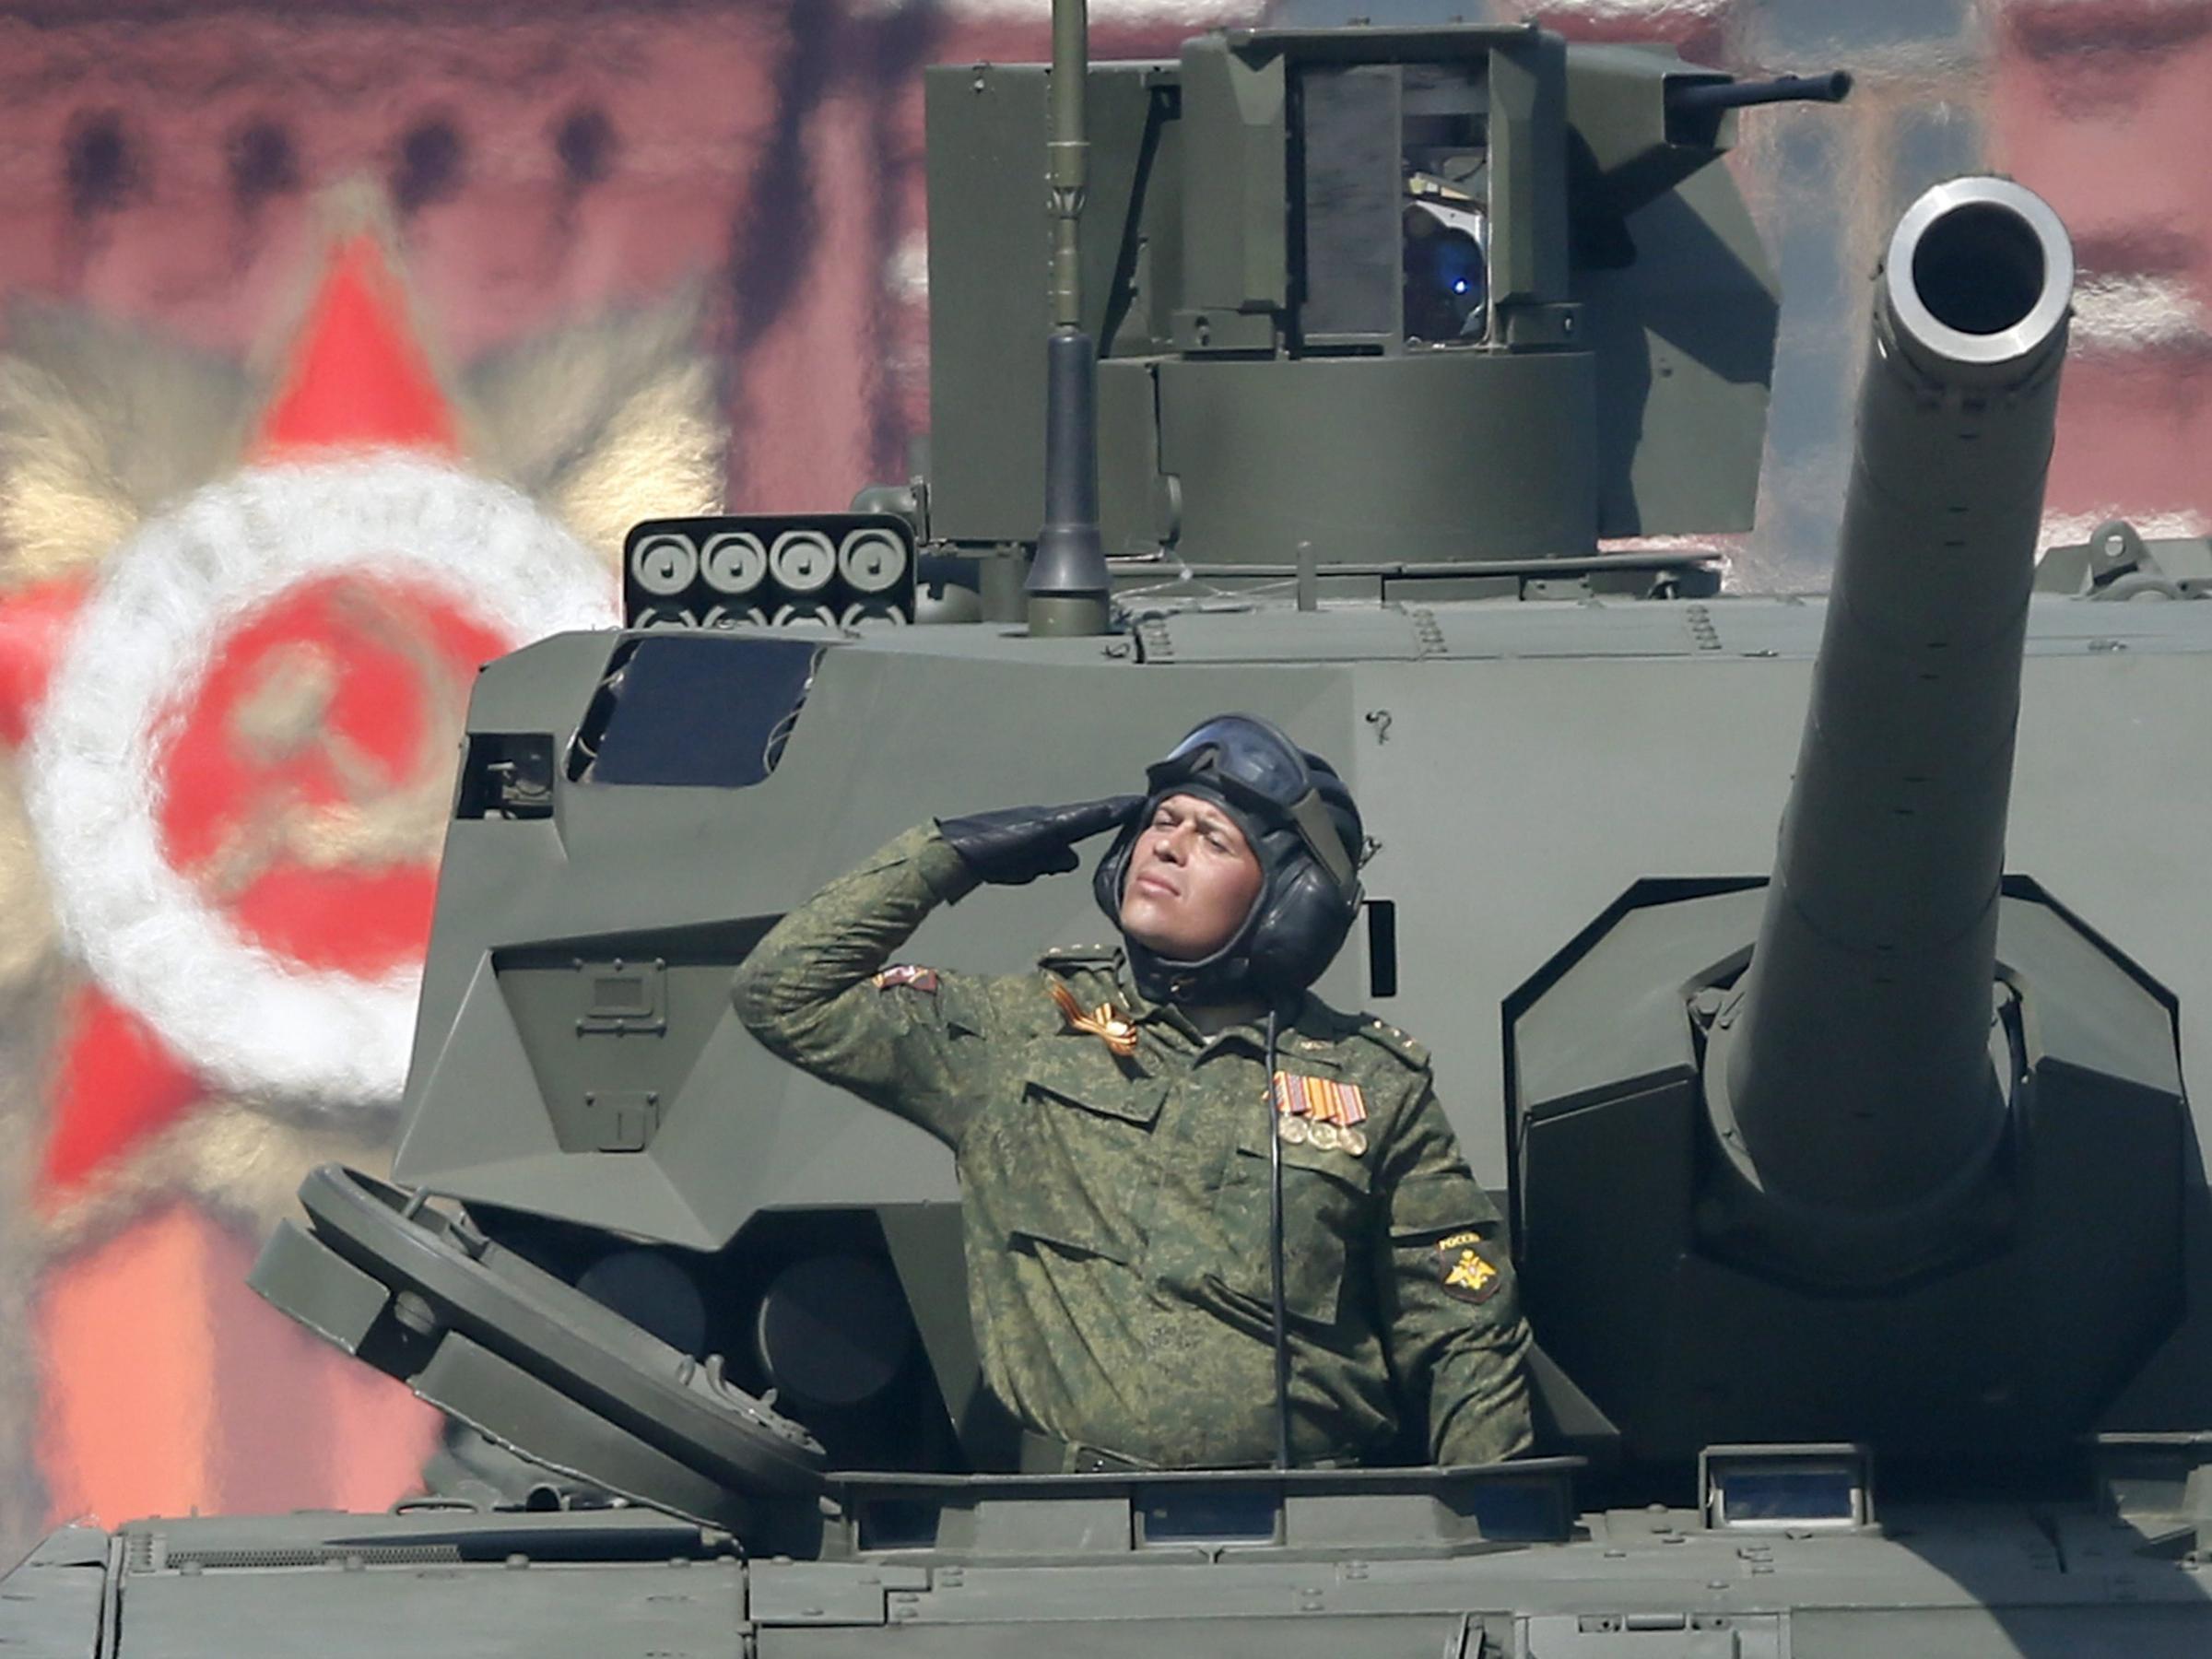 russian tank battles modern day